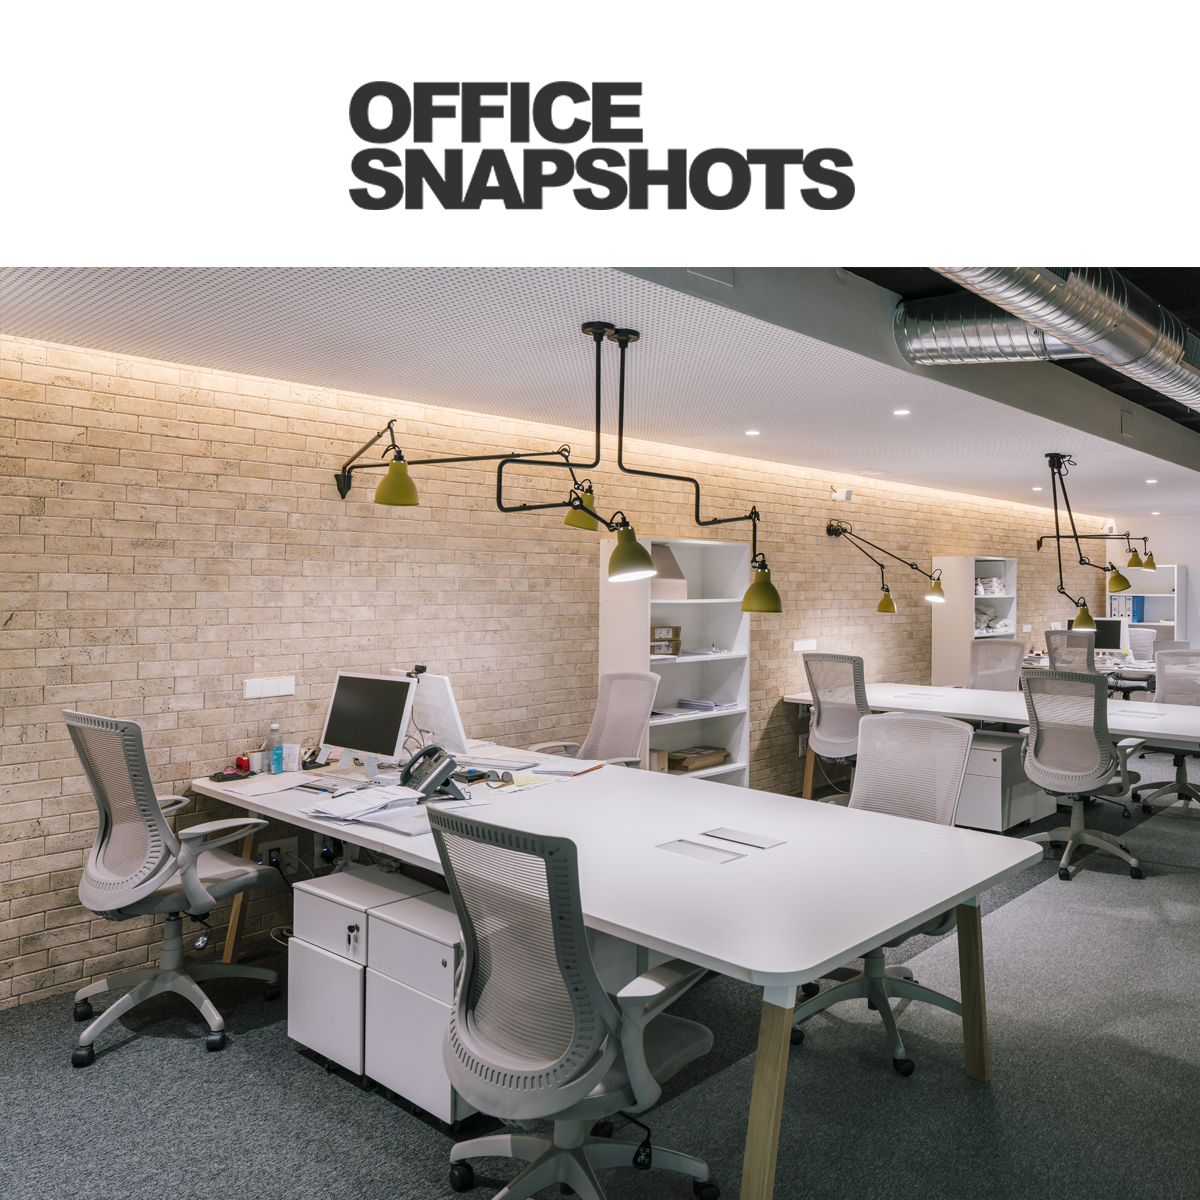 Office Snapshots